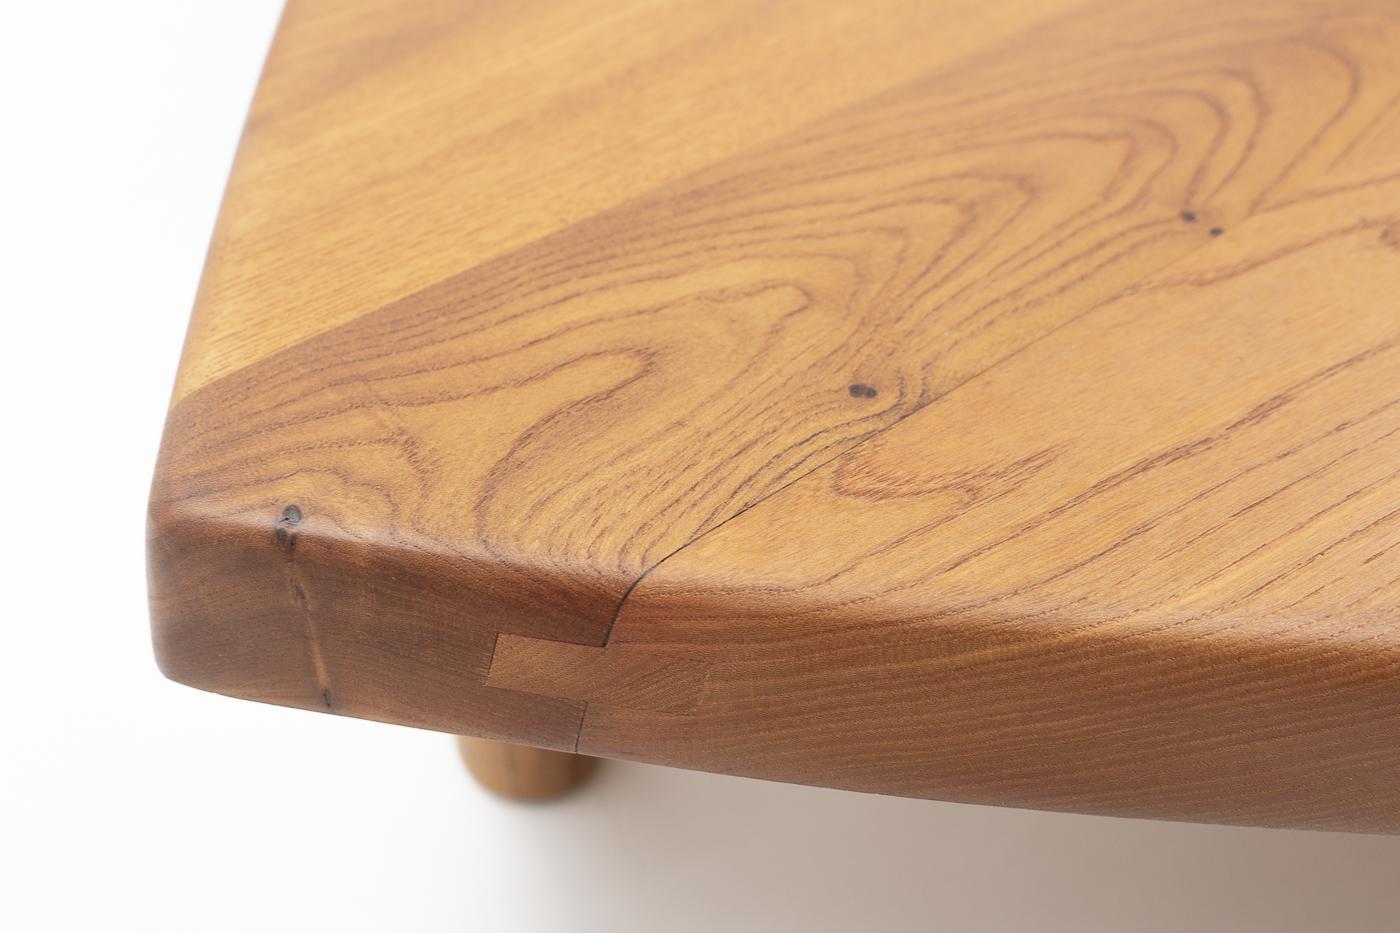 Magnifique table basse T22 de forme ovale, conçue par Pierre Chapo : La table se compose de trois parties individuelles, qui peuvent être séparées selon les images.

Comme tous les meubles de Chapo, ce meuble présente une excellente qualité de